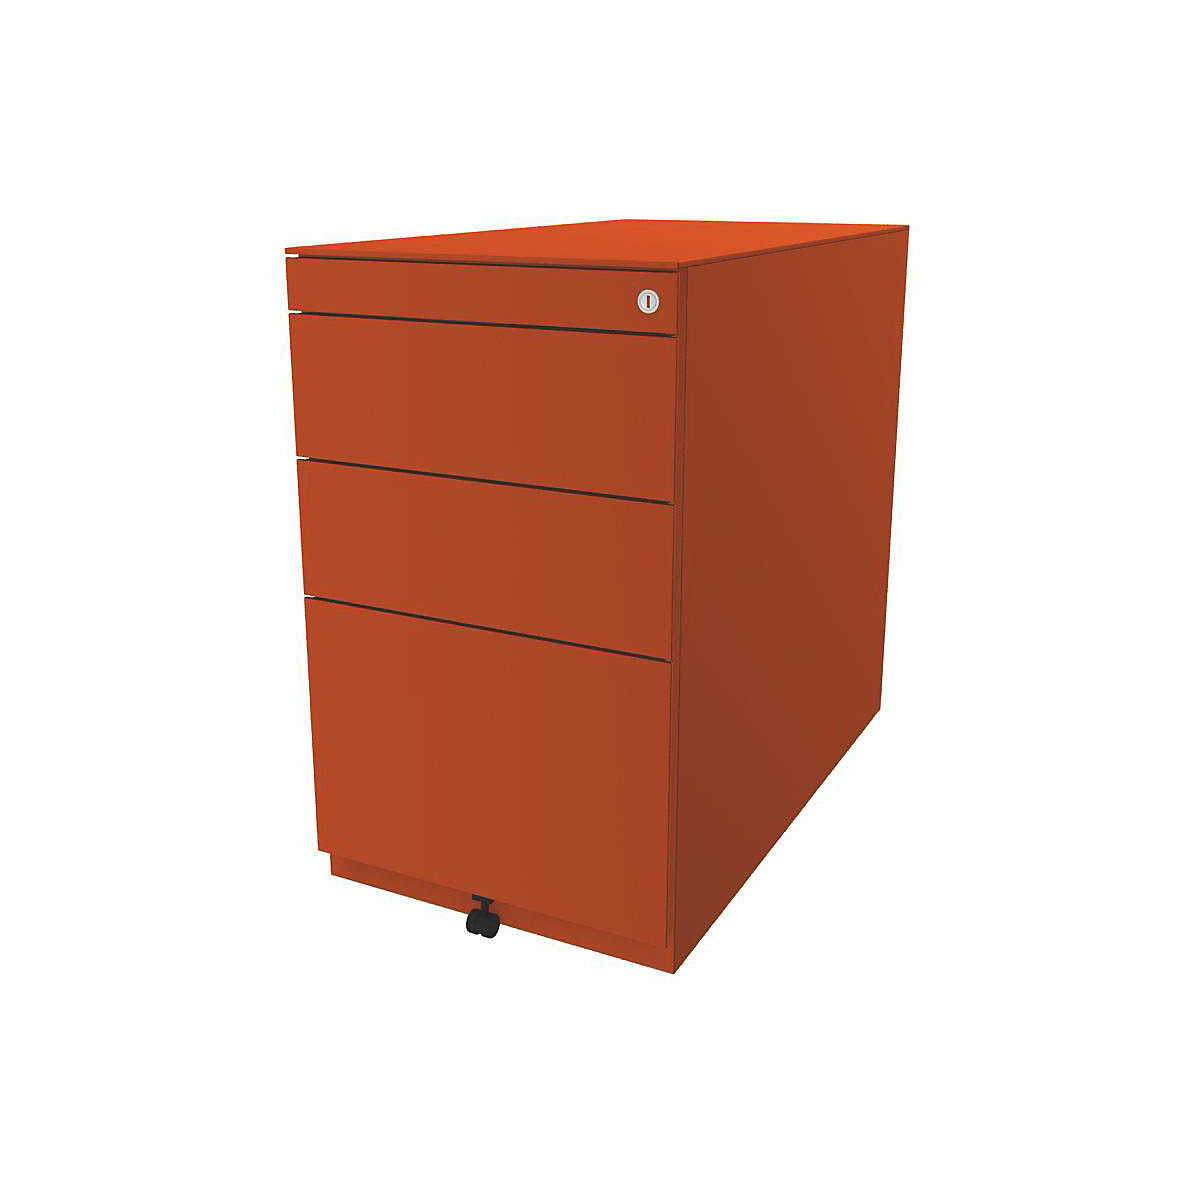 BISLEY Standcontainer Note™, mit 2 Universalschubladen, 1 Hängeregistratur, mit Top, Tiefe 775 mm, orange